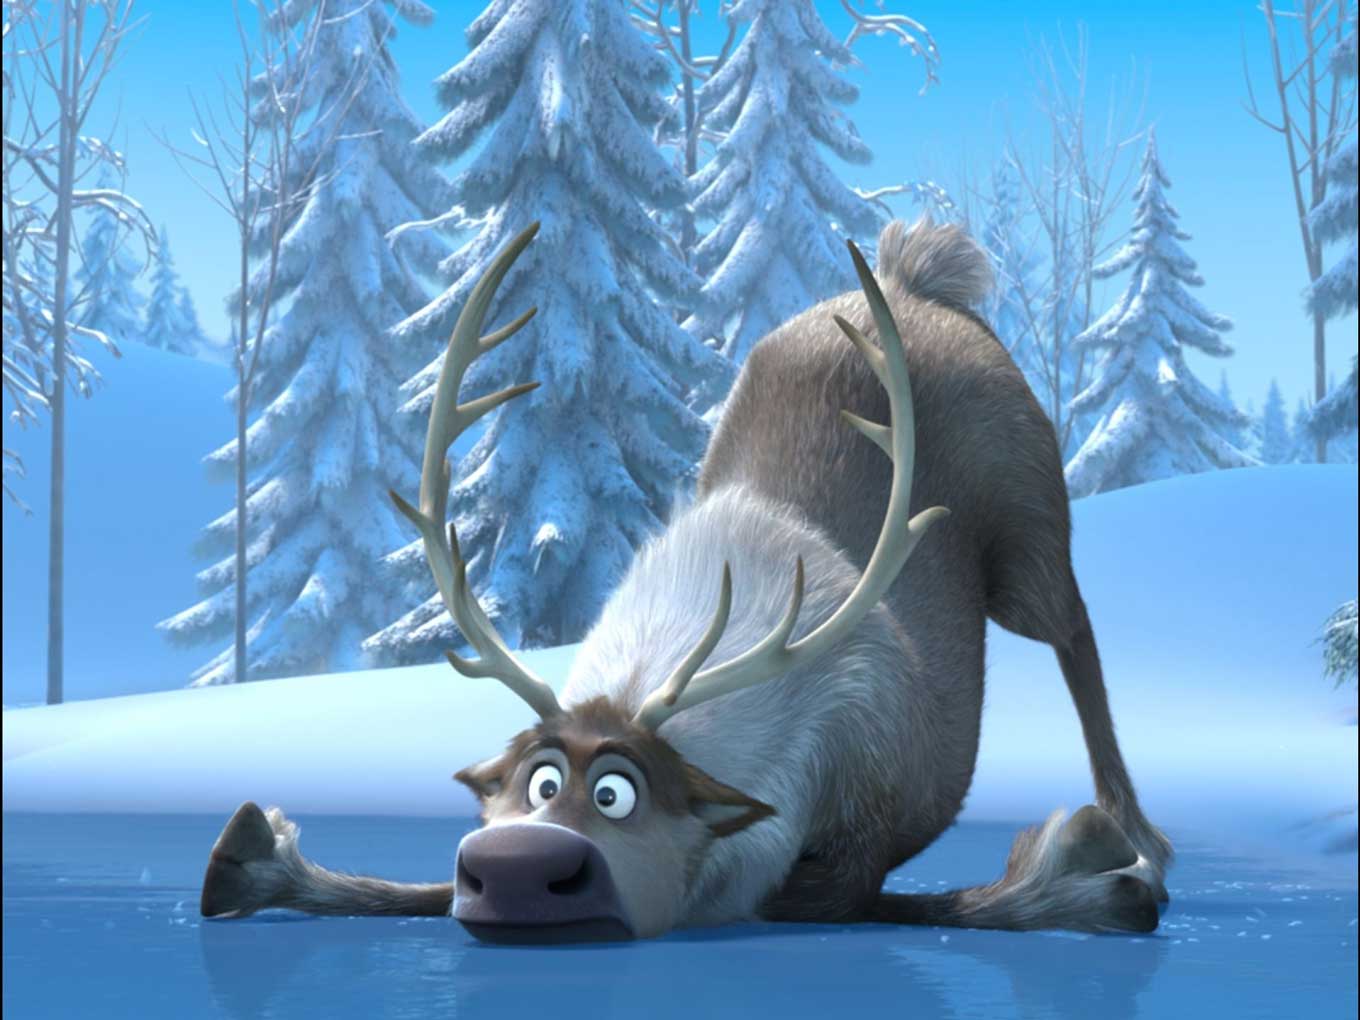 Disney Frozen Wallpapers & Desktop Backgrounds | Frozen Movie ...